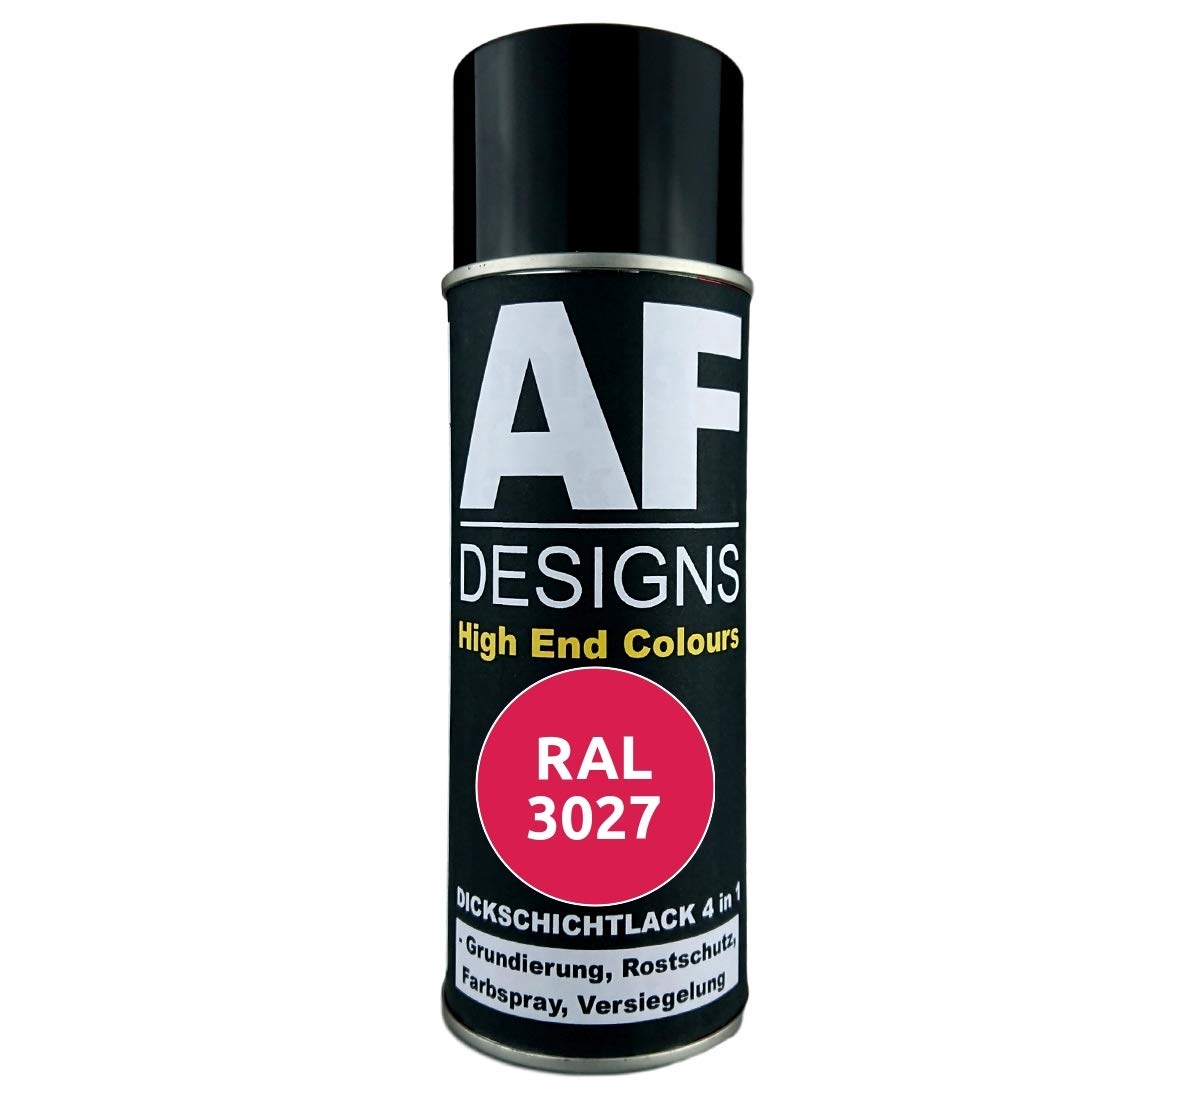 4 in 1 RAL 3027 Himbeerrot Dickschichtlack Lack Spray Spraydose von Alex Flittner Designs